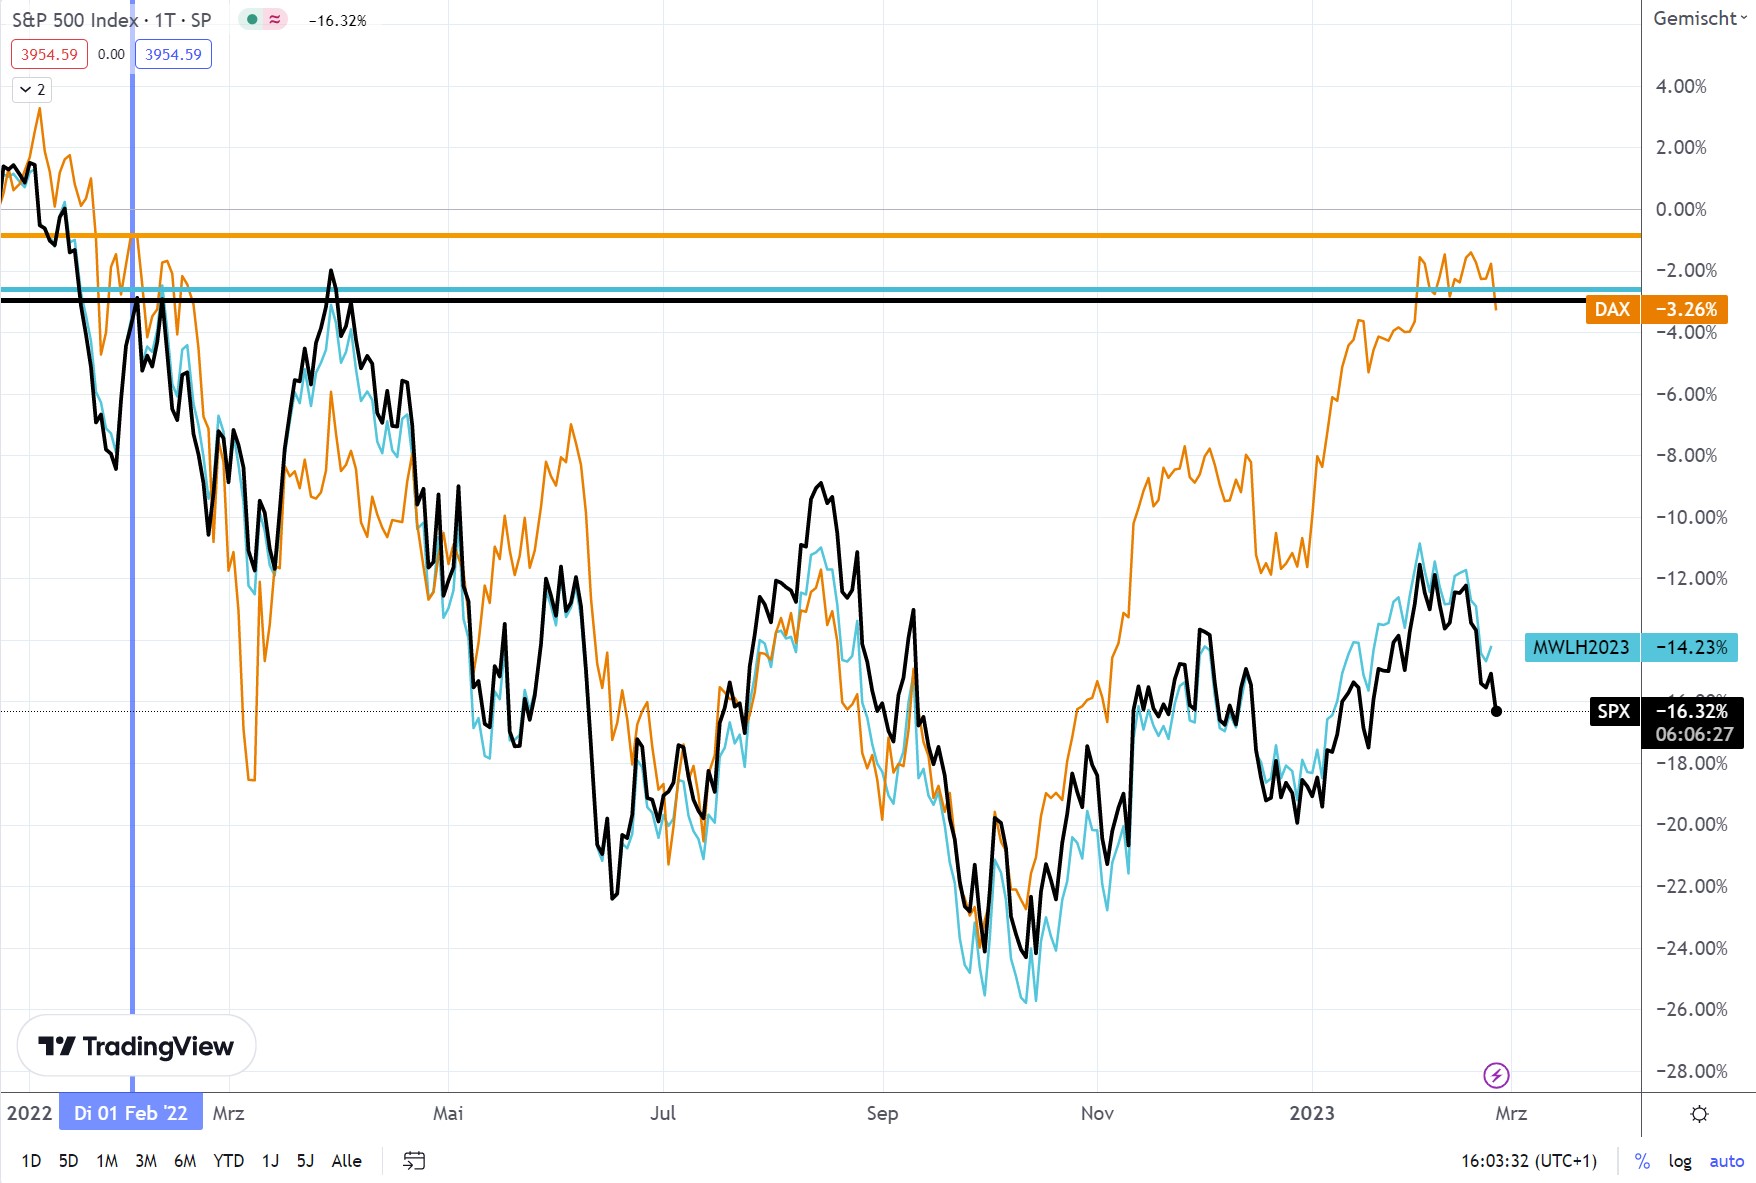 Orange: DAX Index, Schwarz: S&P 500 Index, Hellblau: MSCI World Index